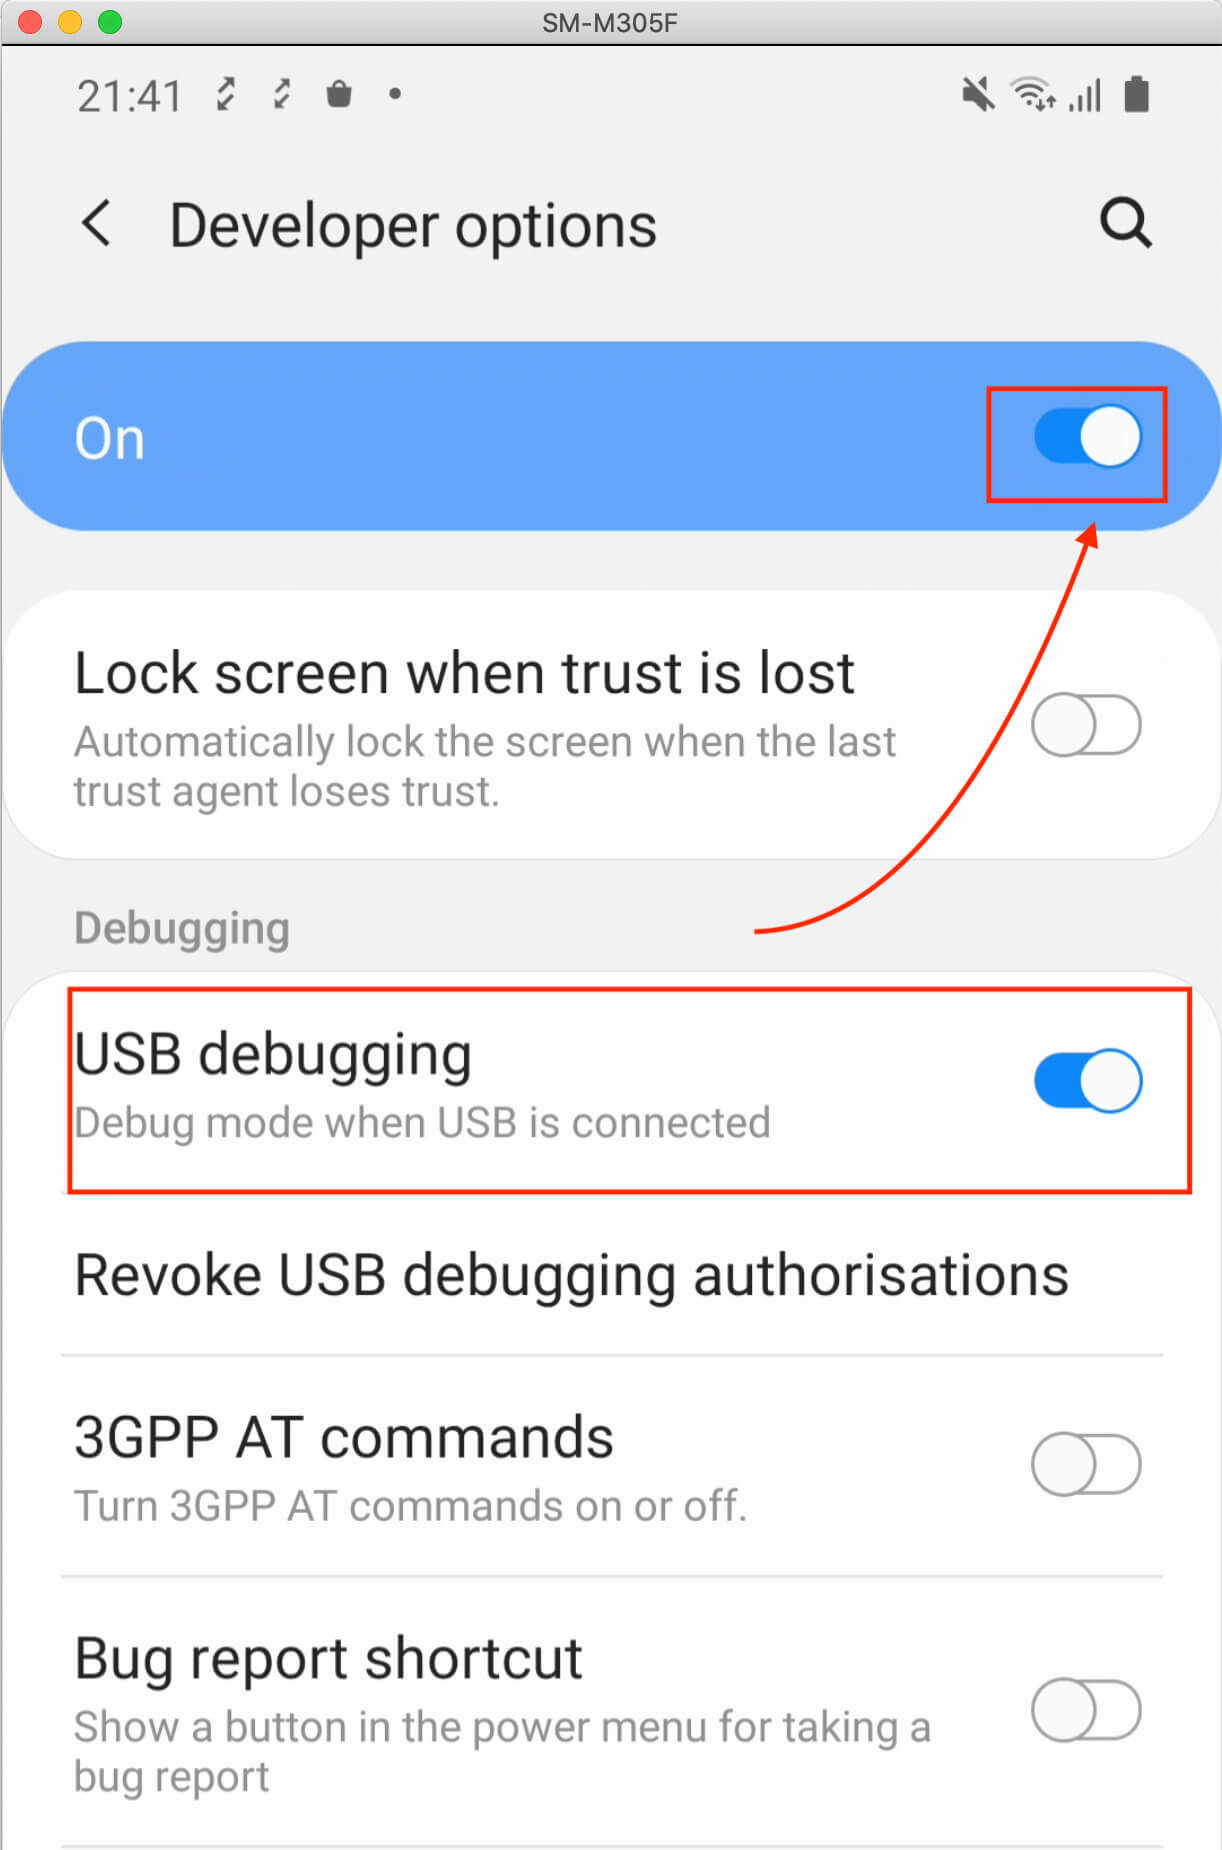 USB Debugging under Developer Options